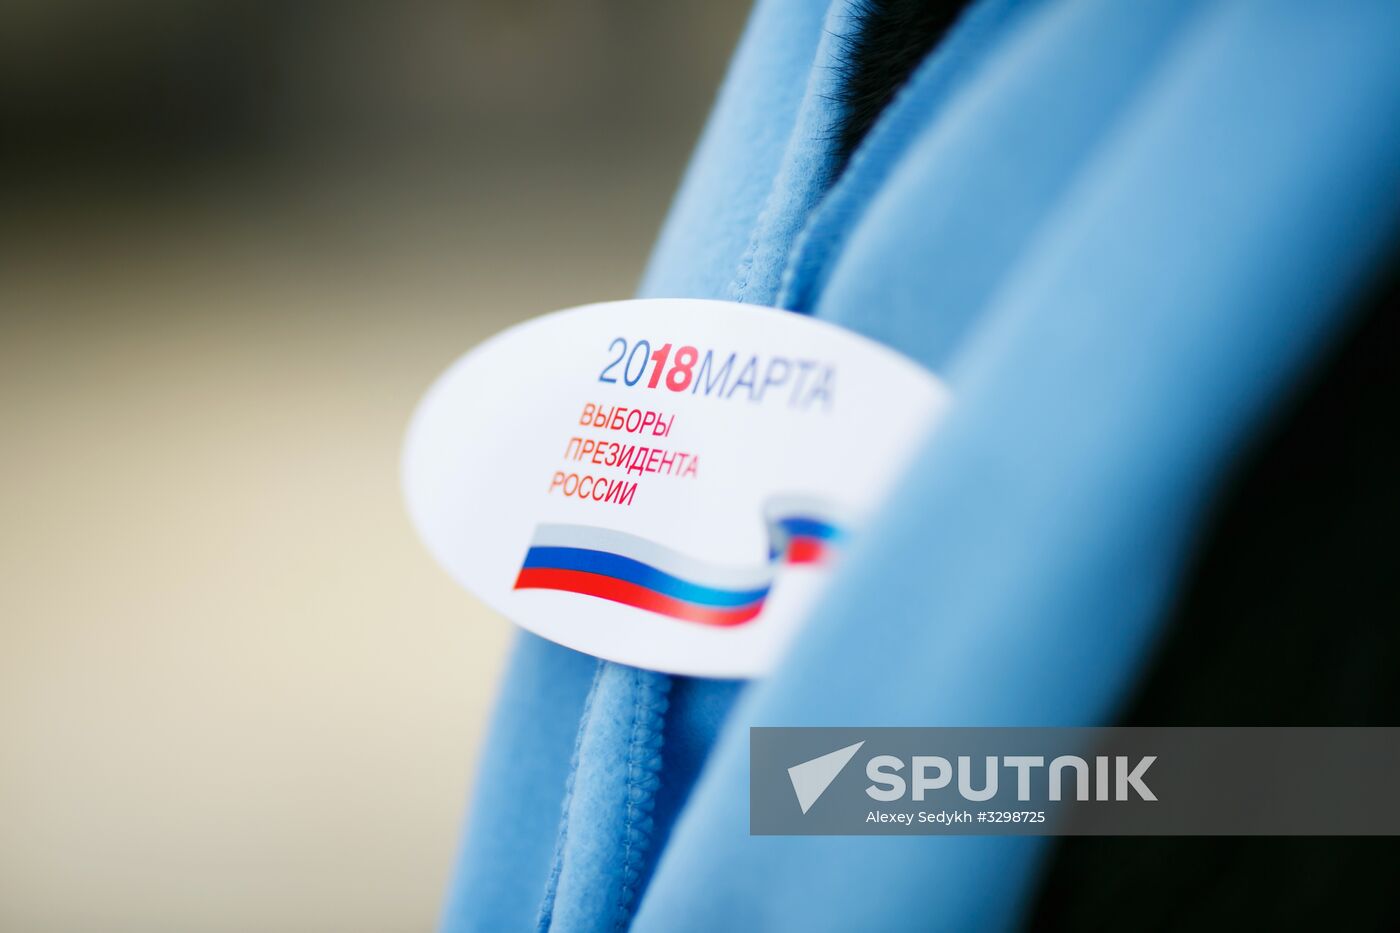 Election commission making door-to-door rounds in Volgograd